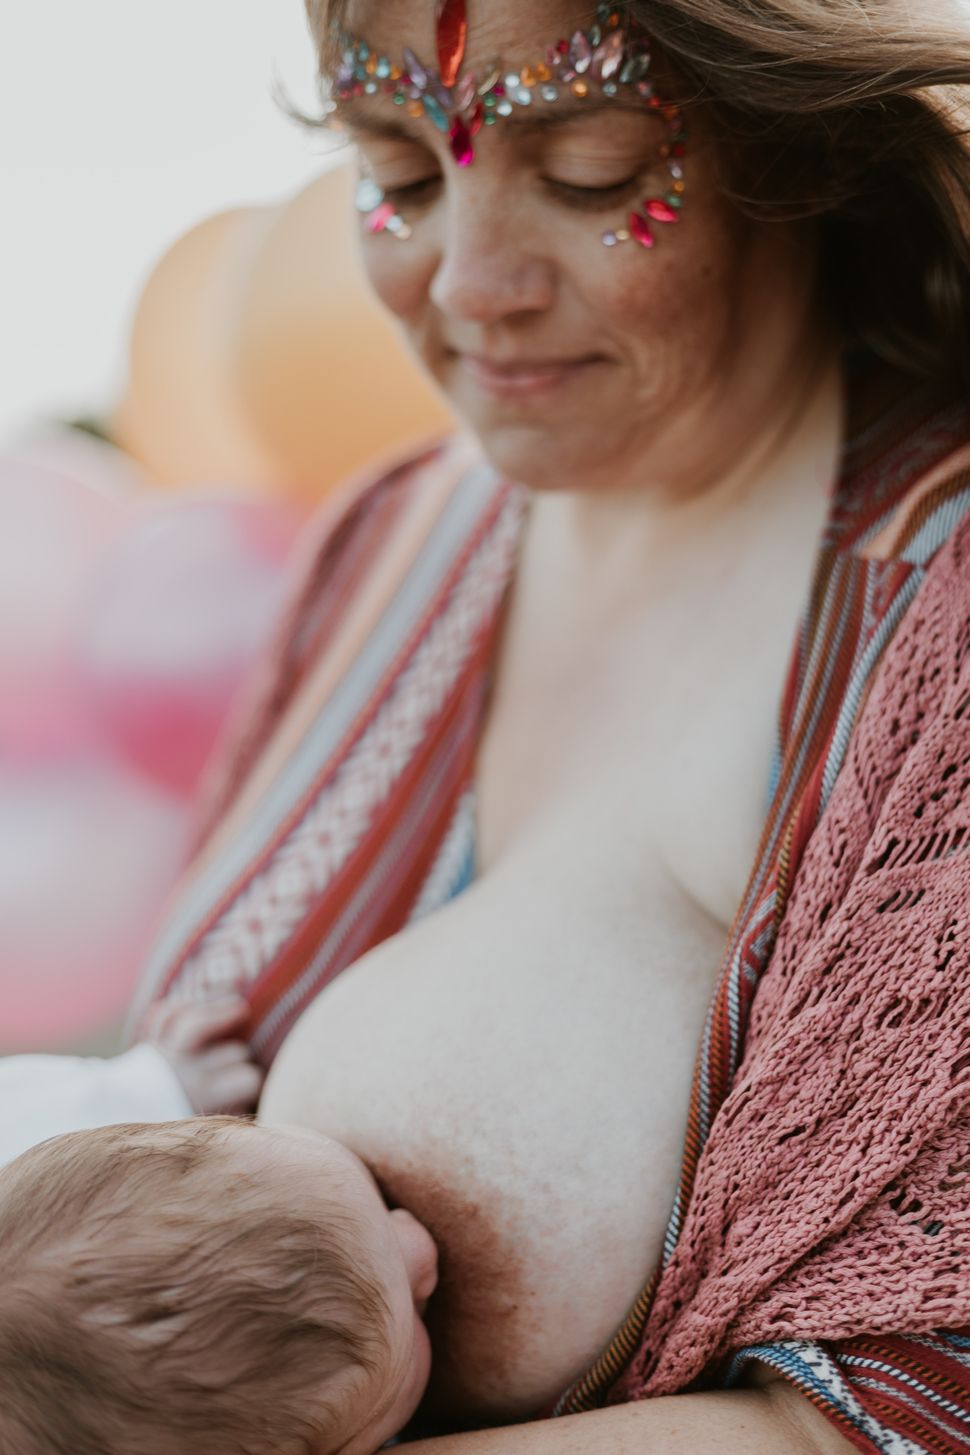 Helen breastfeeding her child.